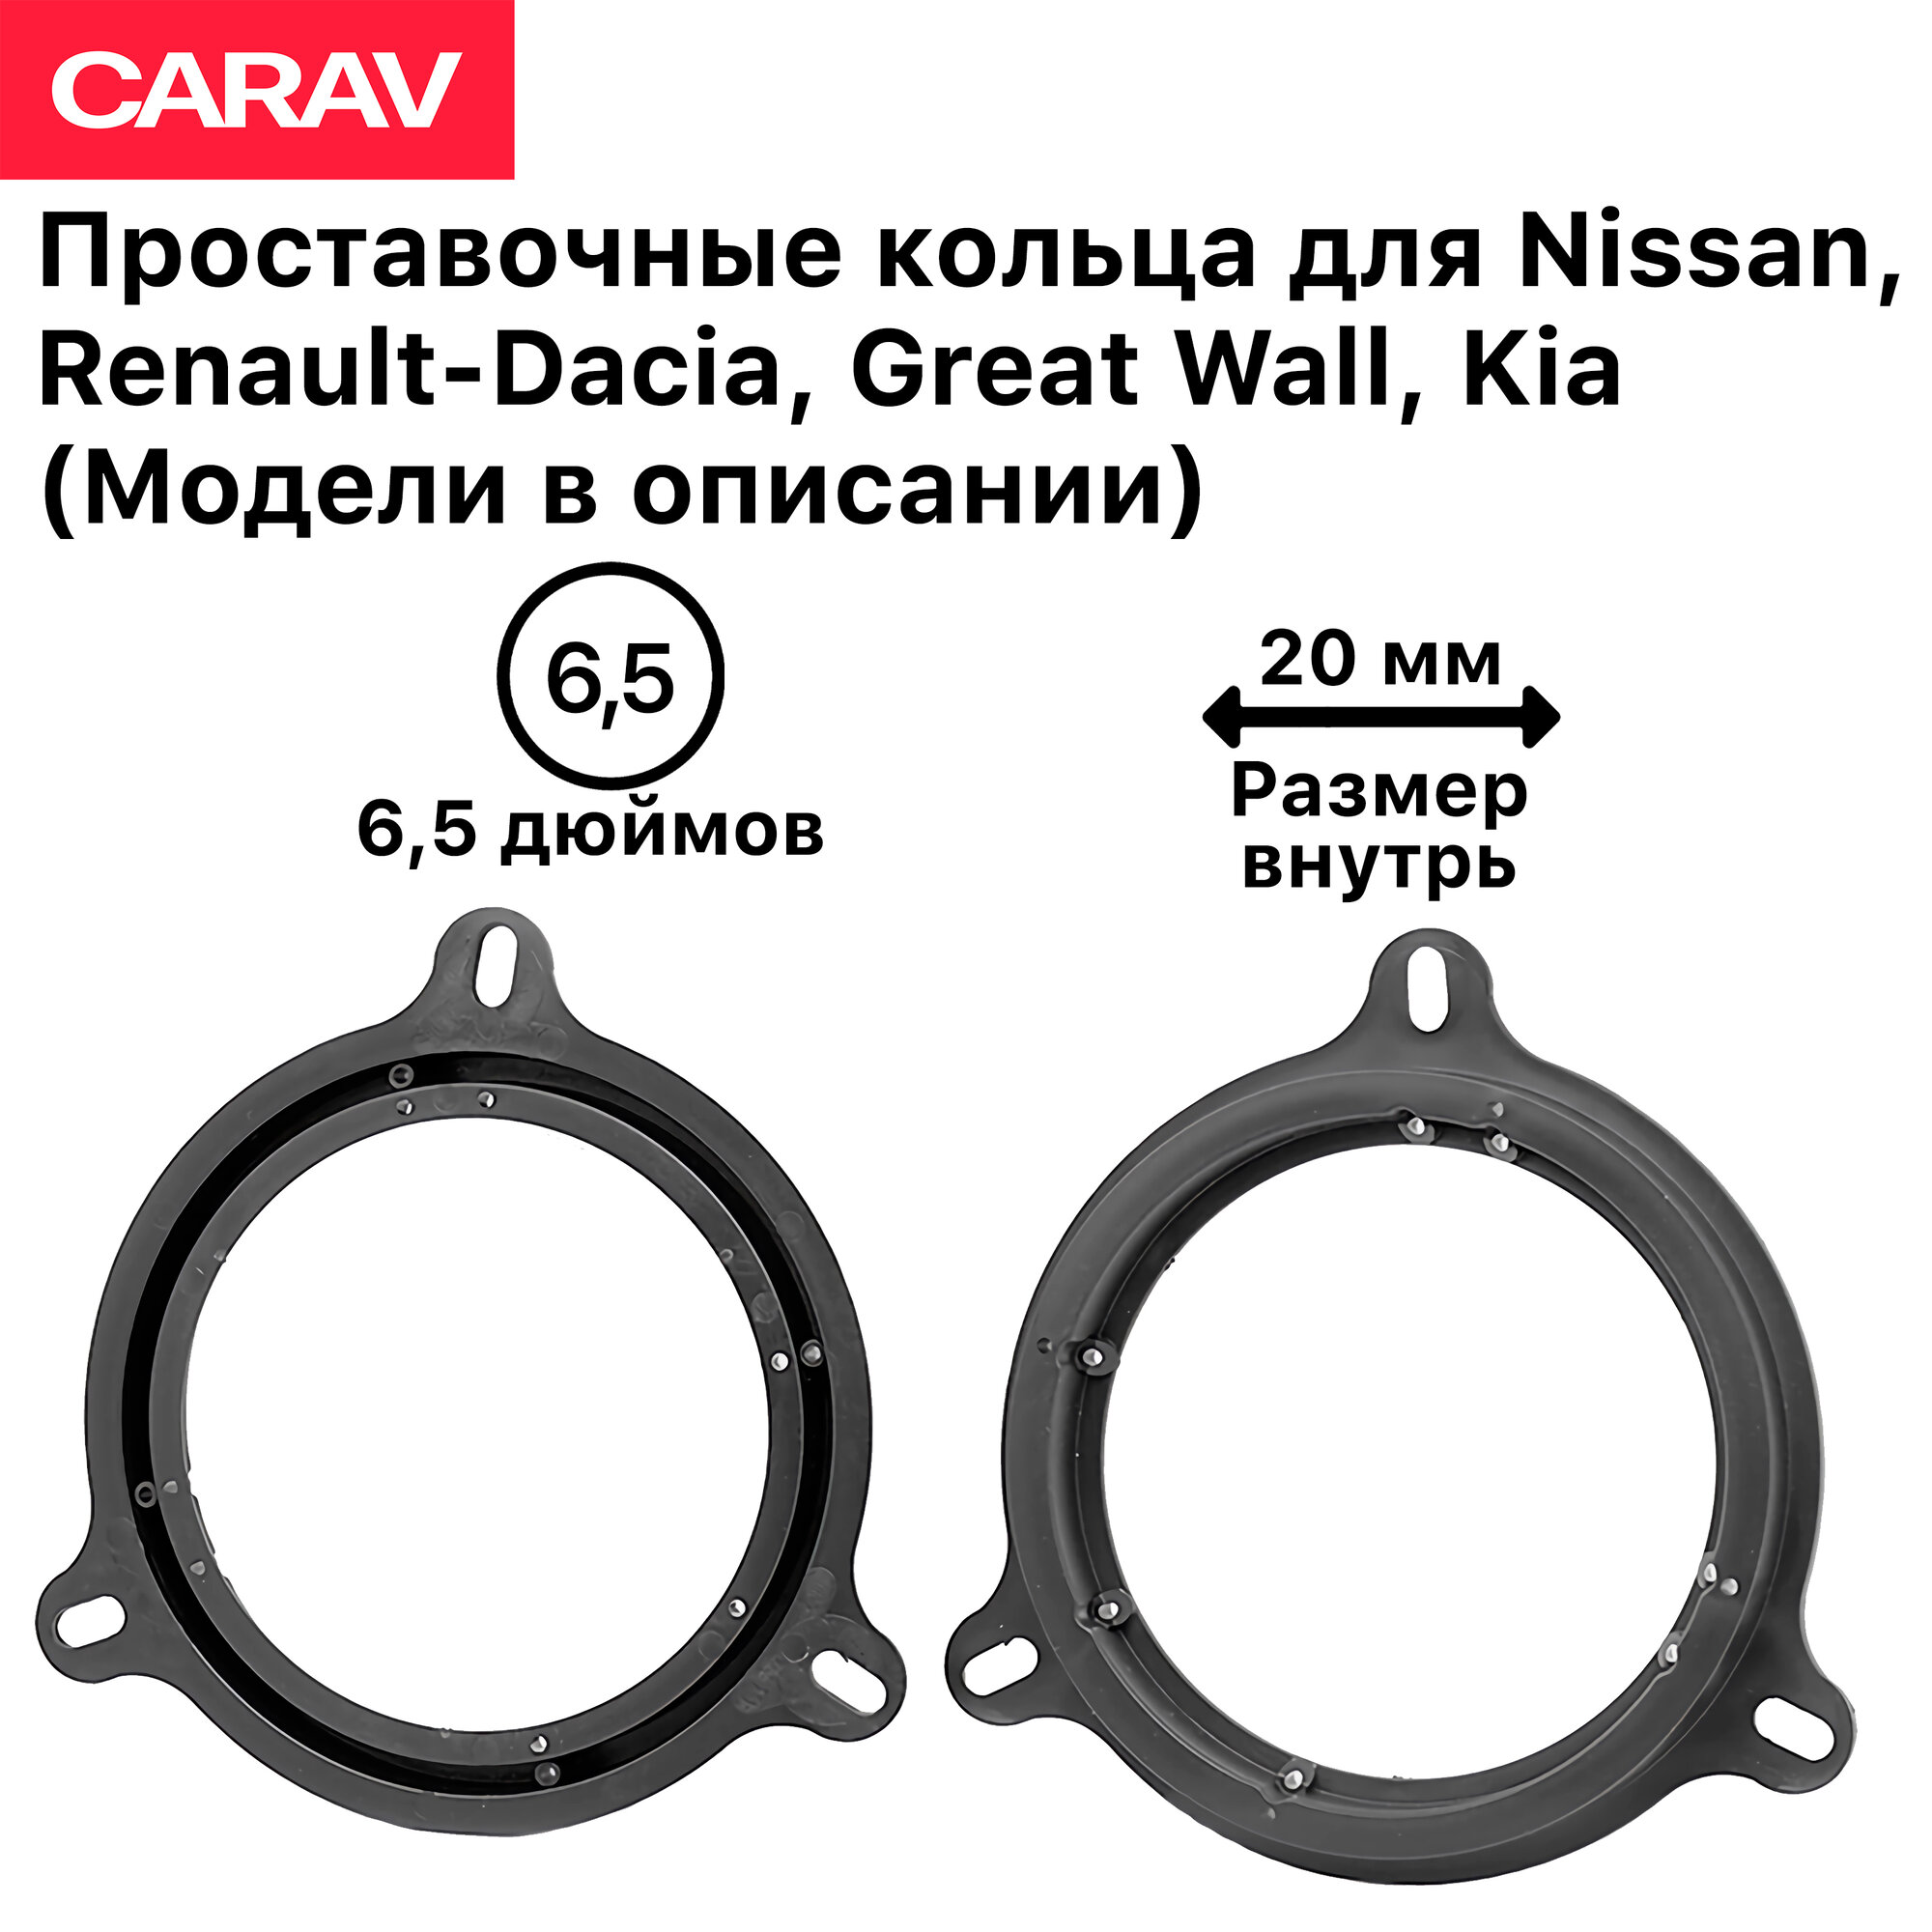 Проставочные кольца 6.5 дюймов (2 шт) Carav для динамиков Nissan, Renault-Dacia, Great Wall, Kia (Модели в описании)